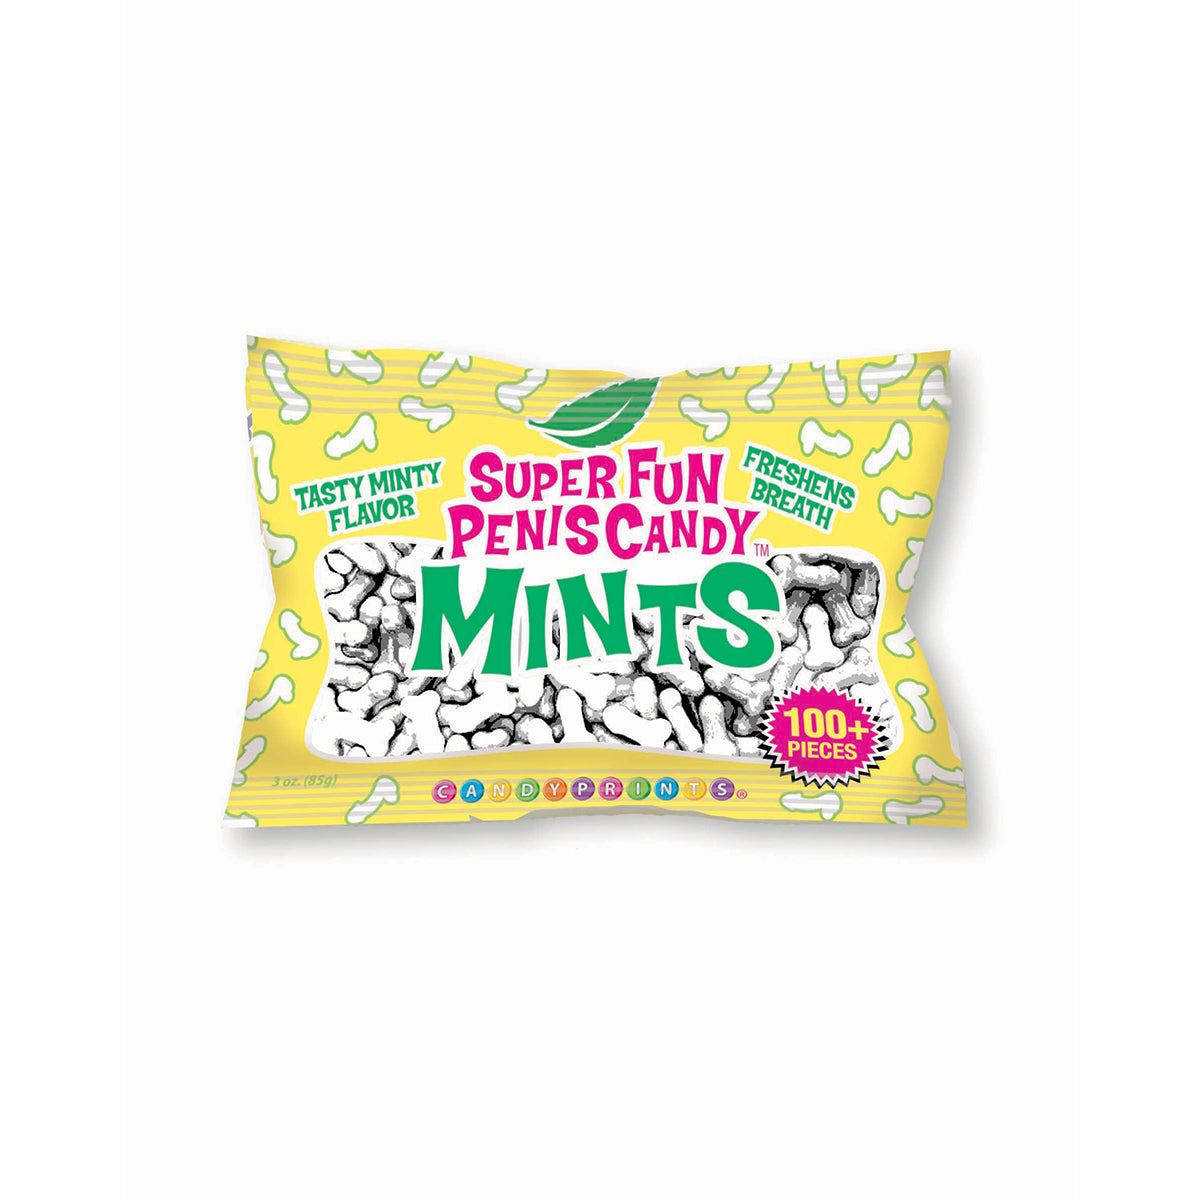 Super Fun Penis Mints Bag 3oz